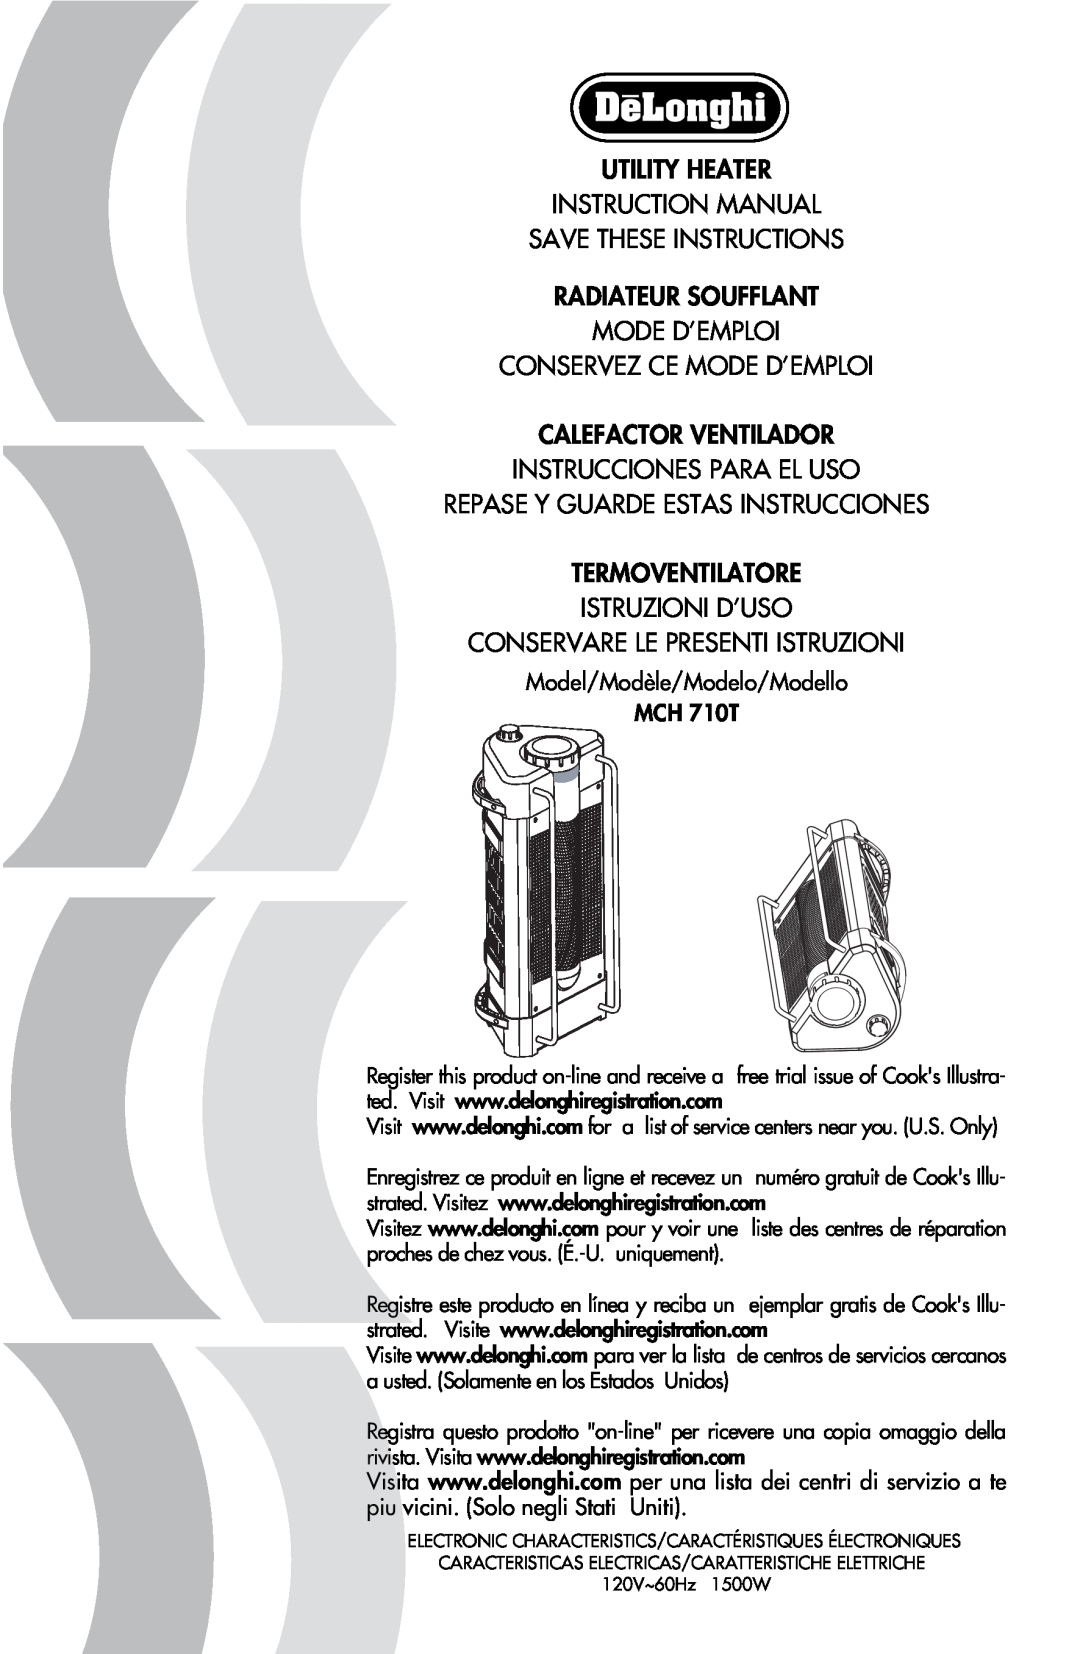 DeLonghi MCH 710T instruction manual Save These Instructions Radiateur Soufflant, Mode D’Emploi Conservez Ce Mode D’Emploi 